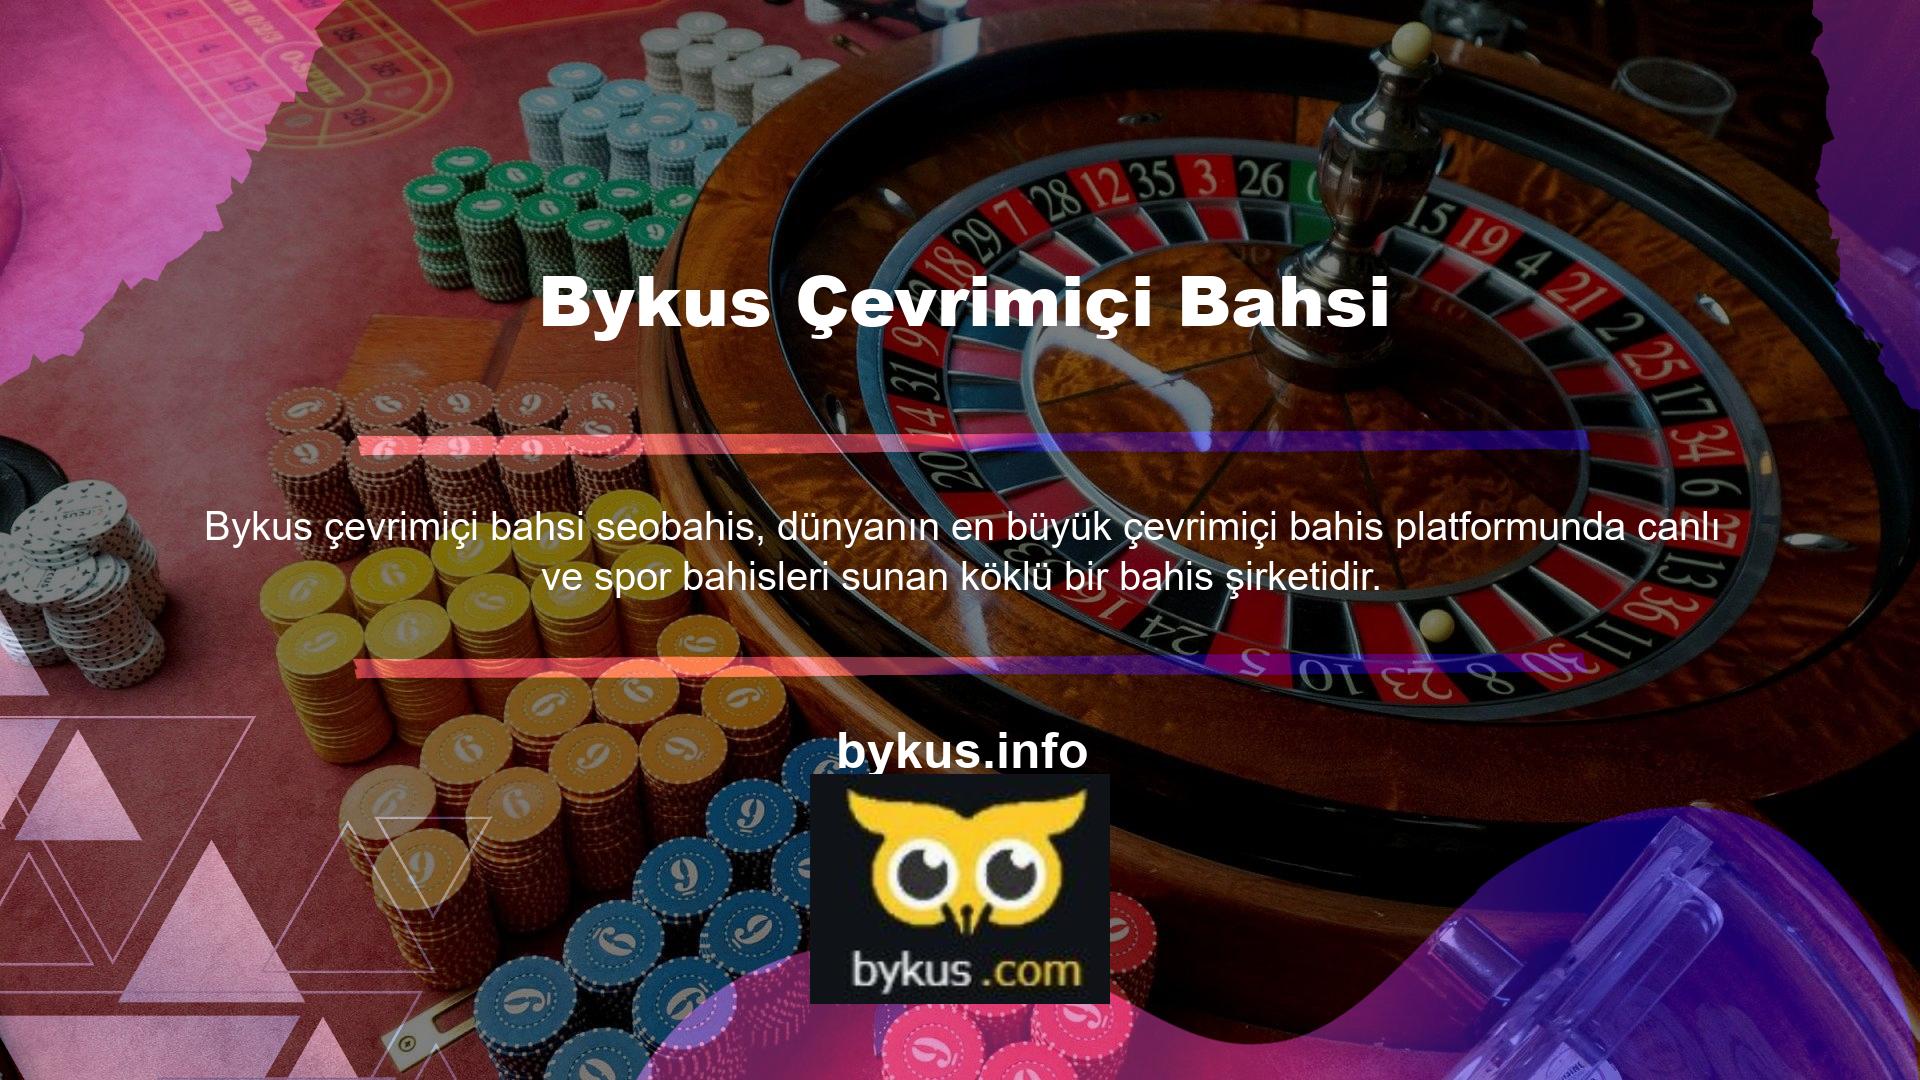 Bykus Türkiye'de birçok müşteriye hizmet vermektedir